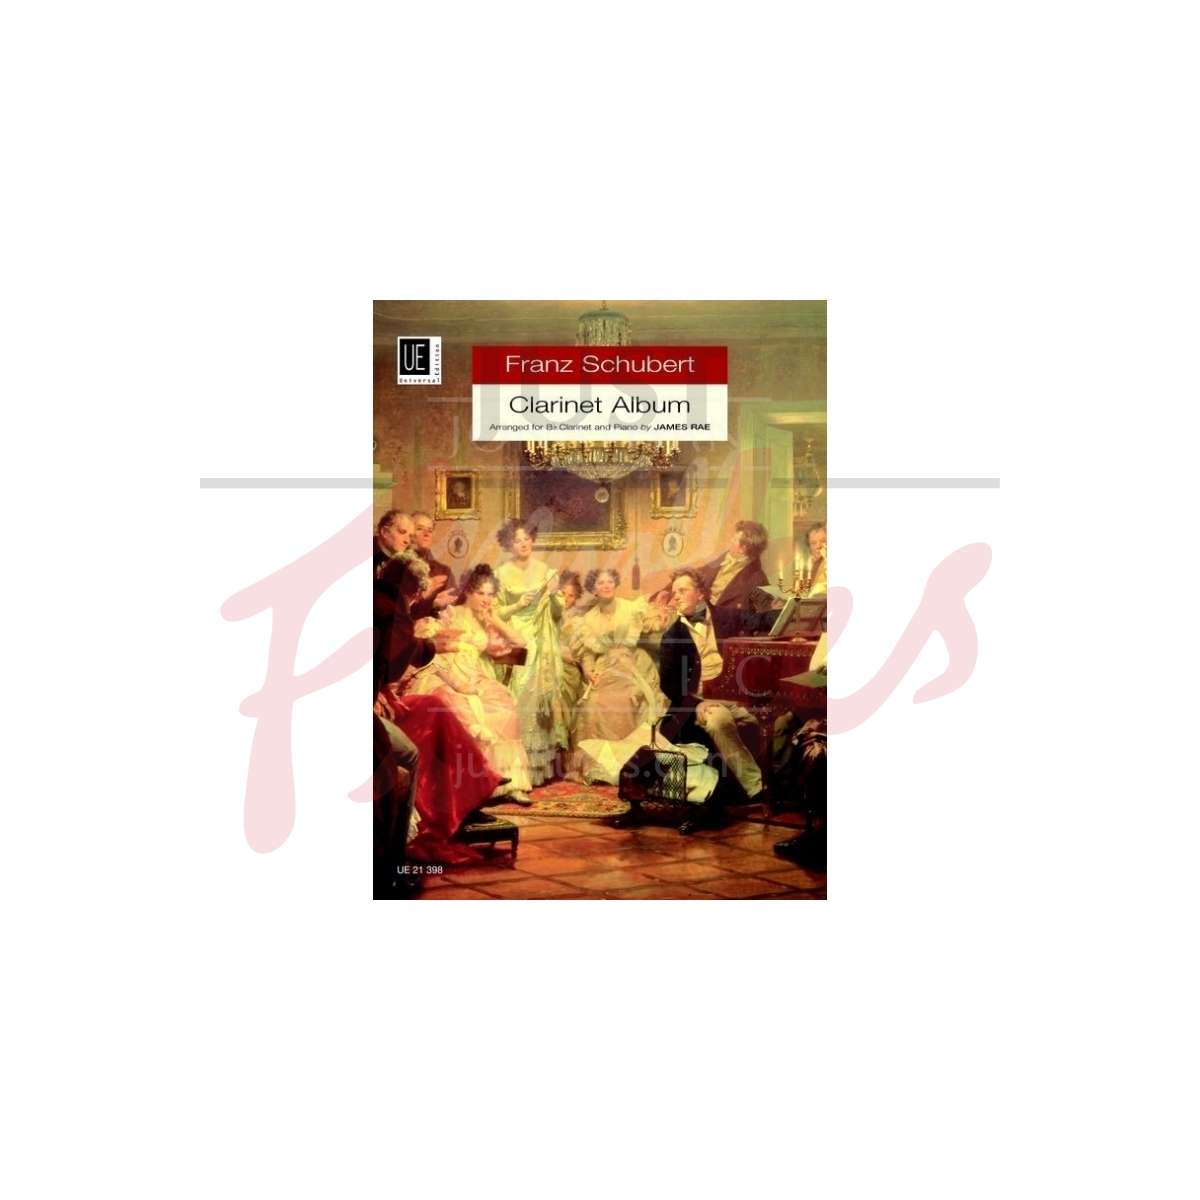 Franz Schubert Clarinet Album